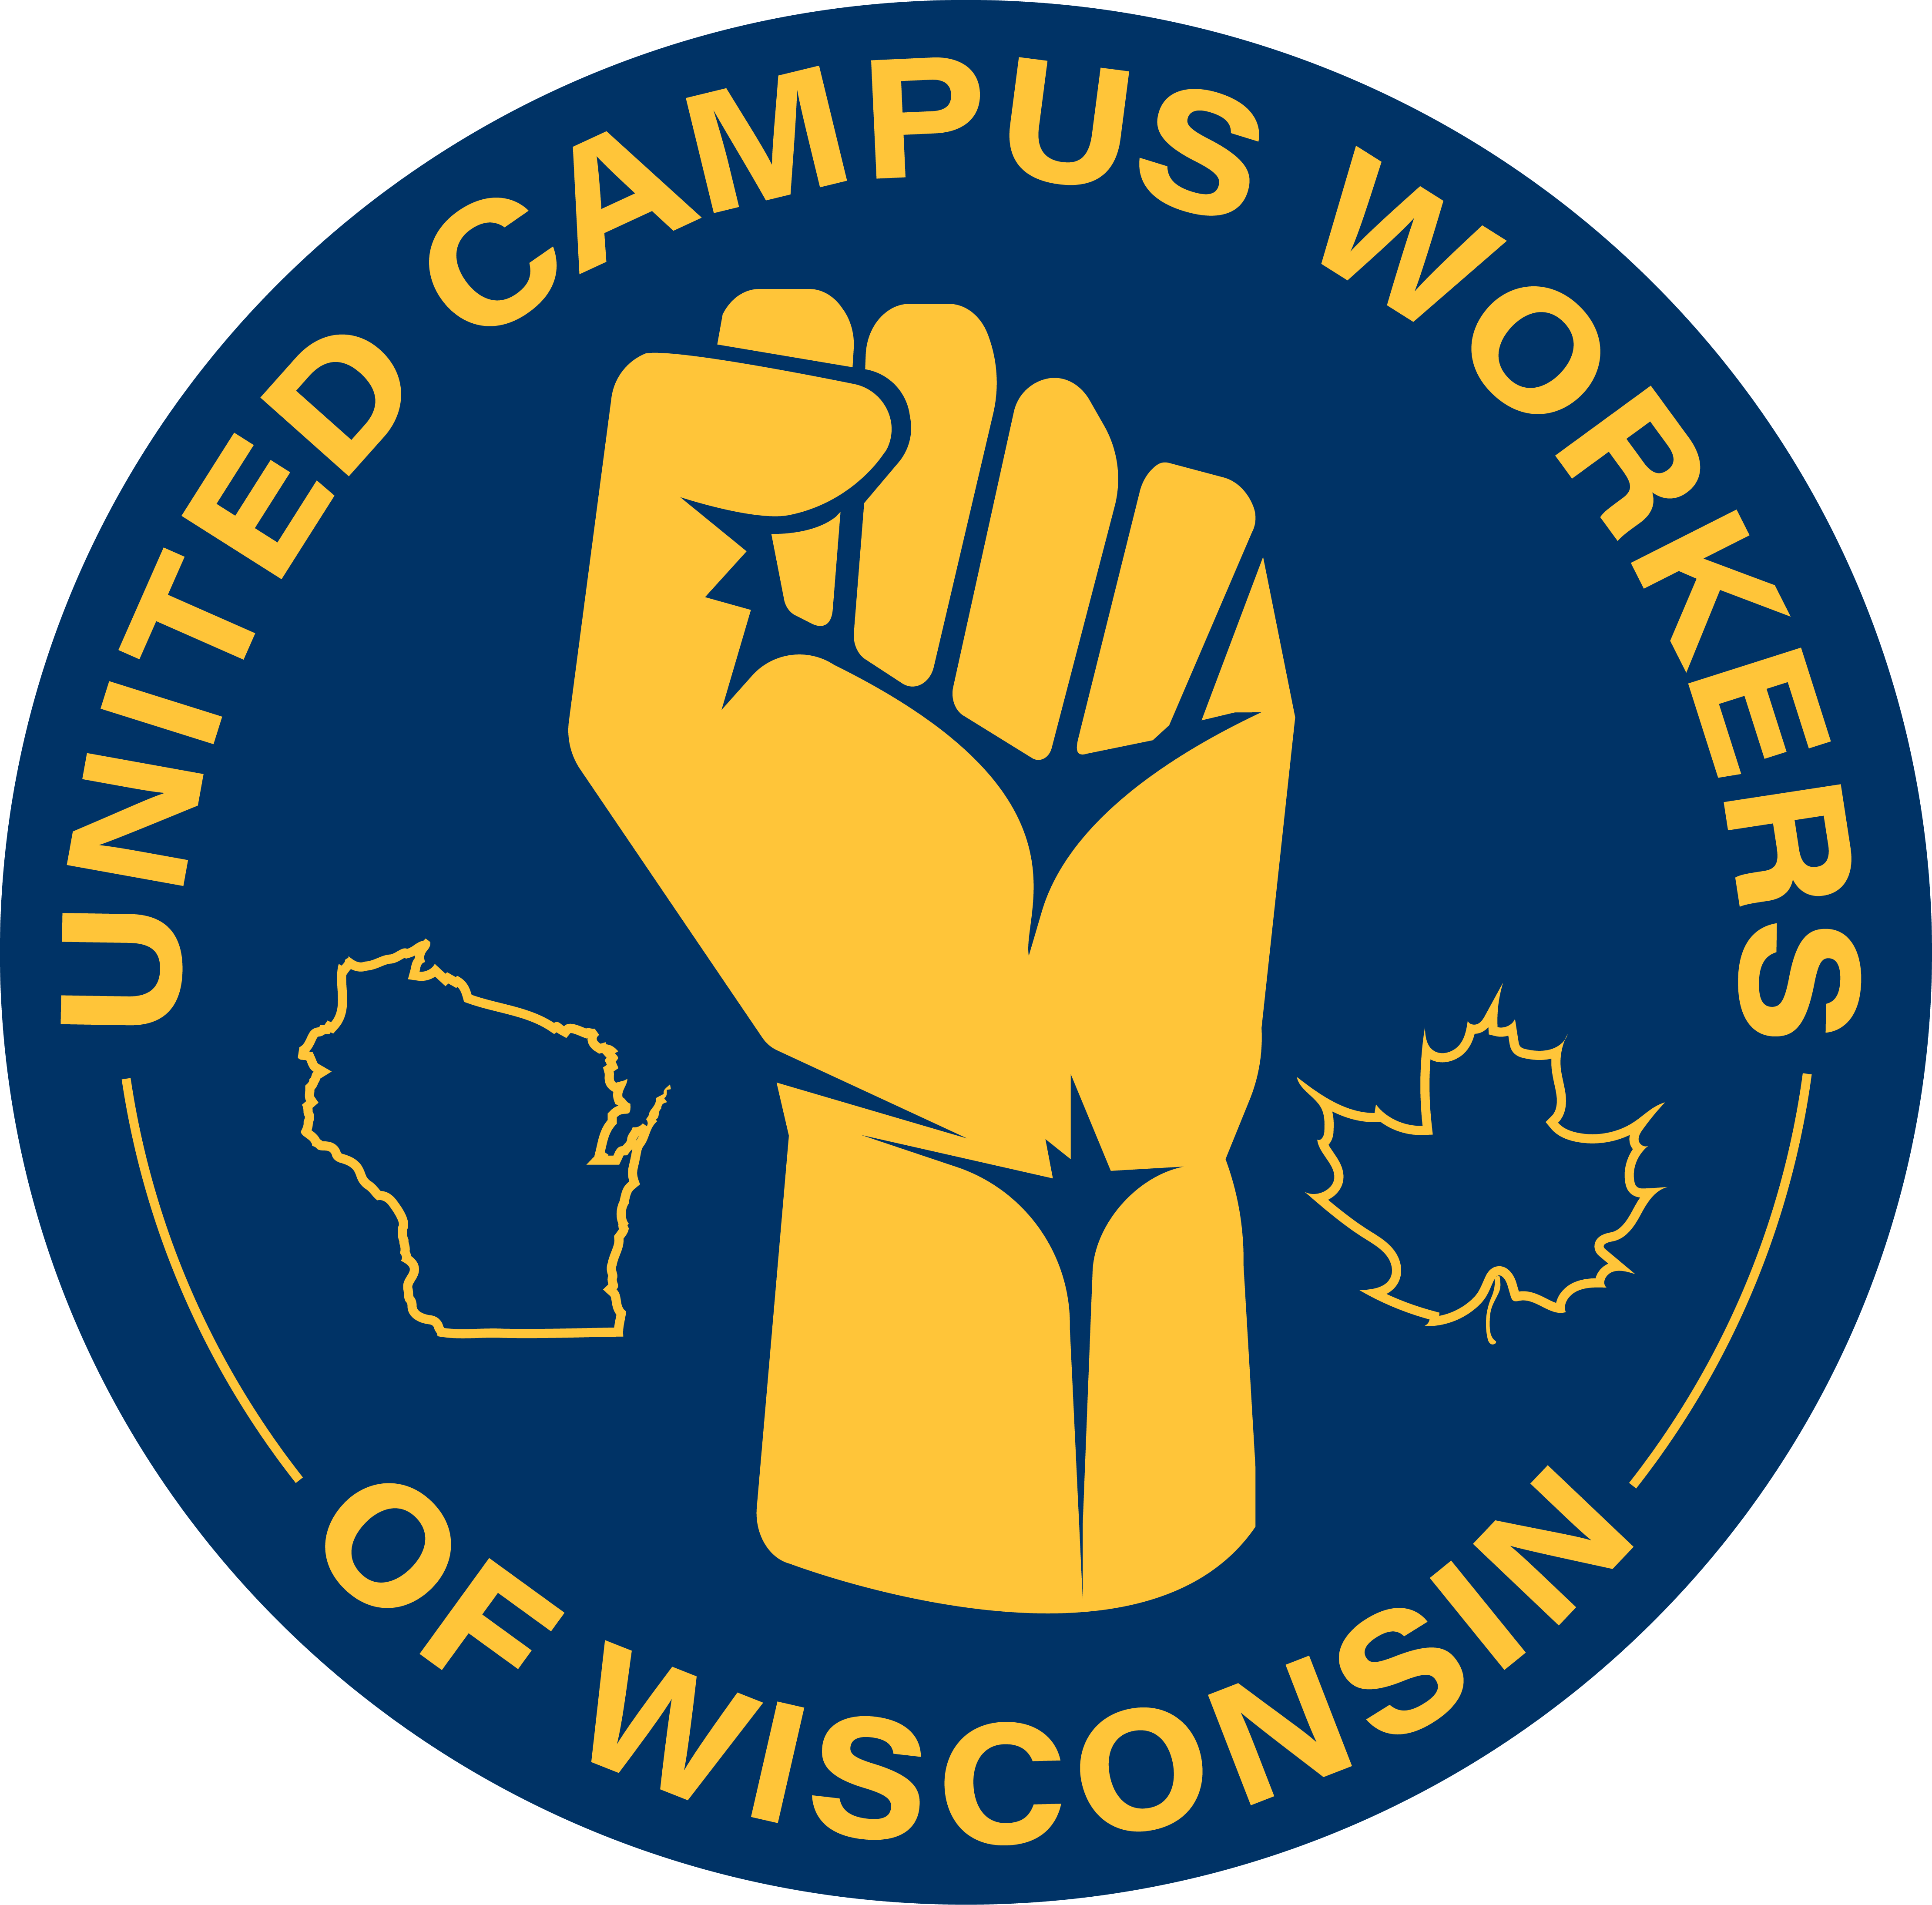 UCW Wisconsin